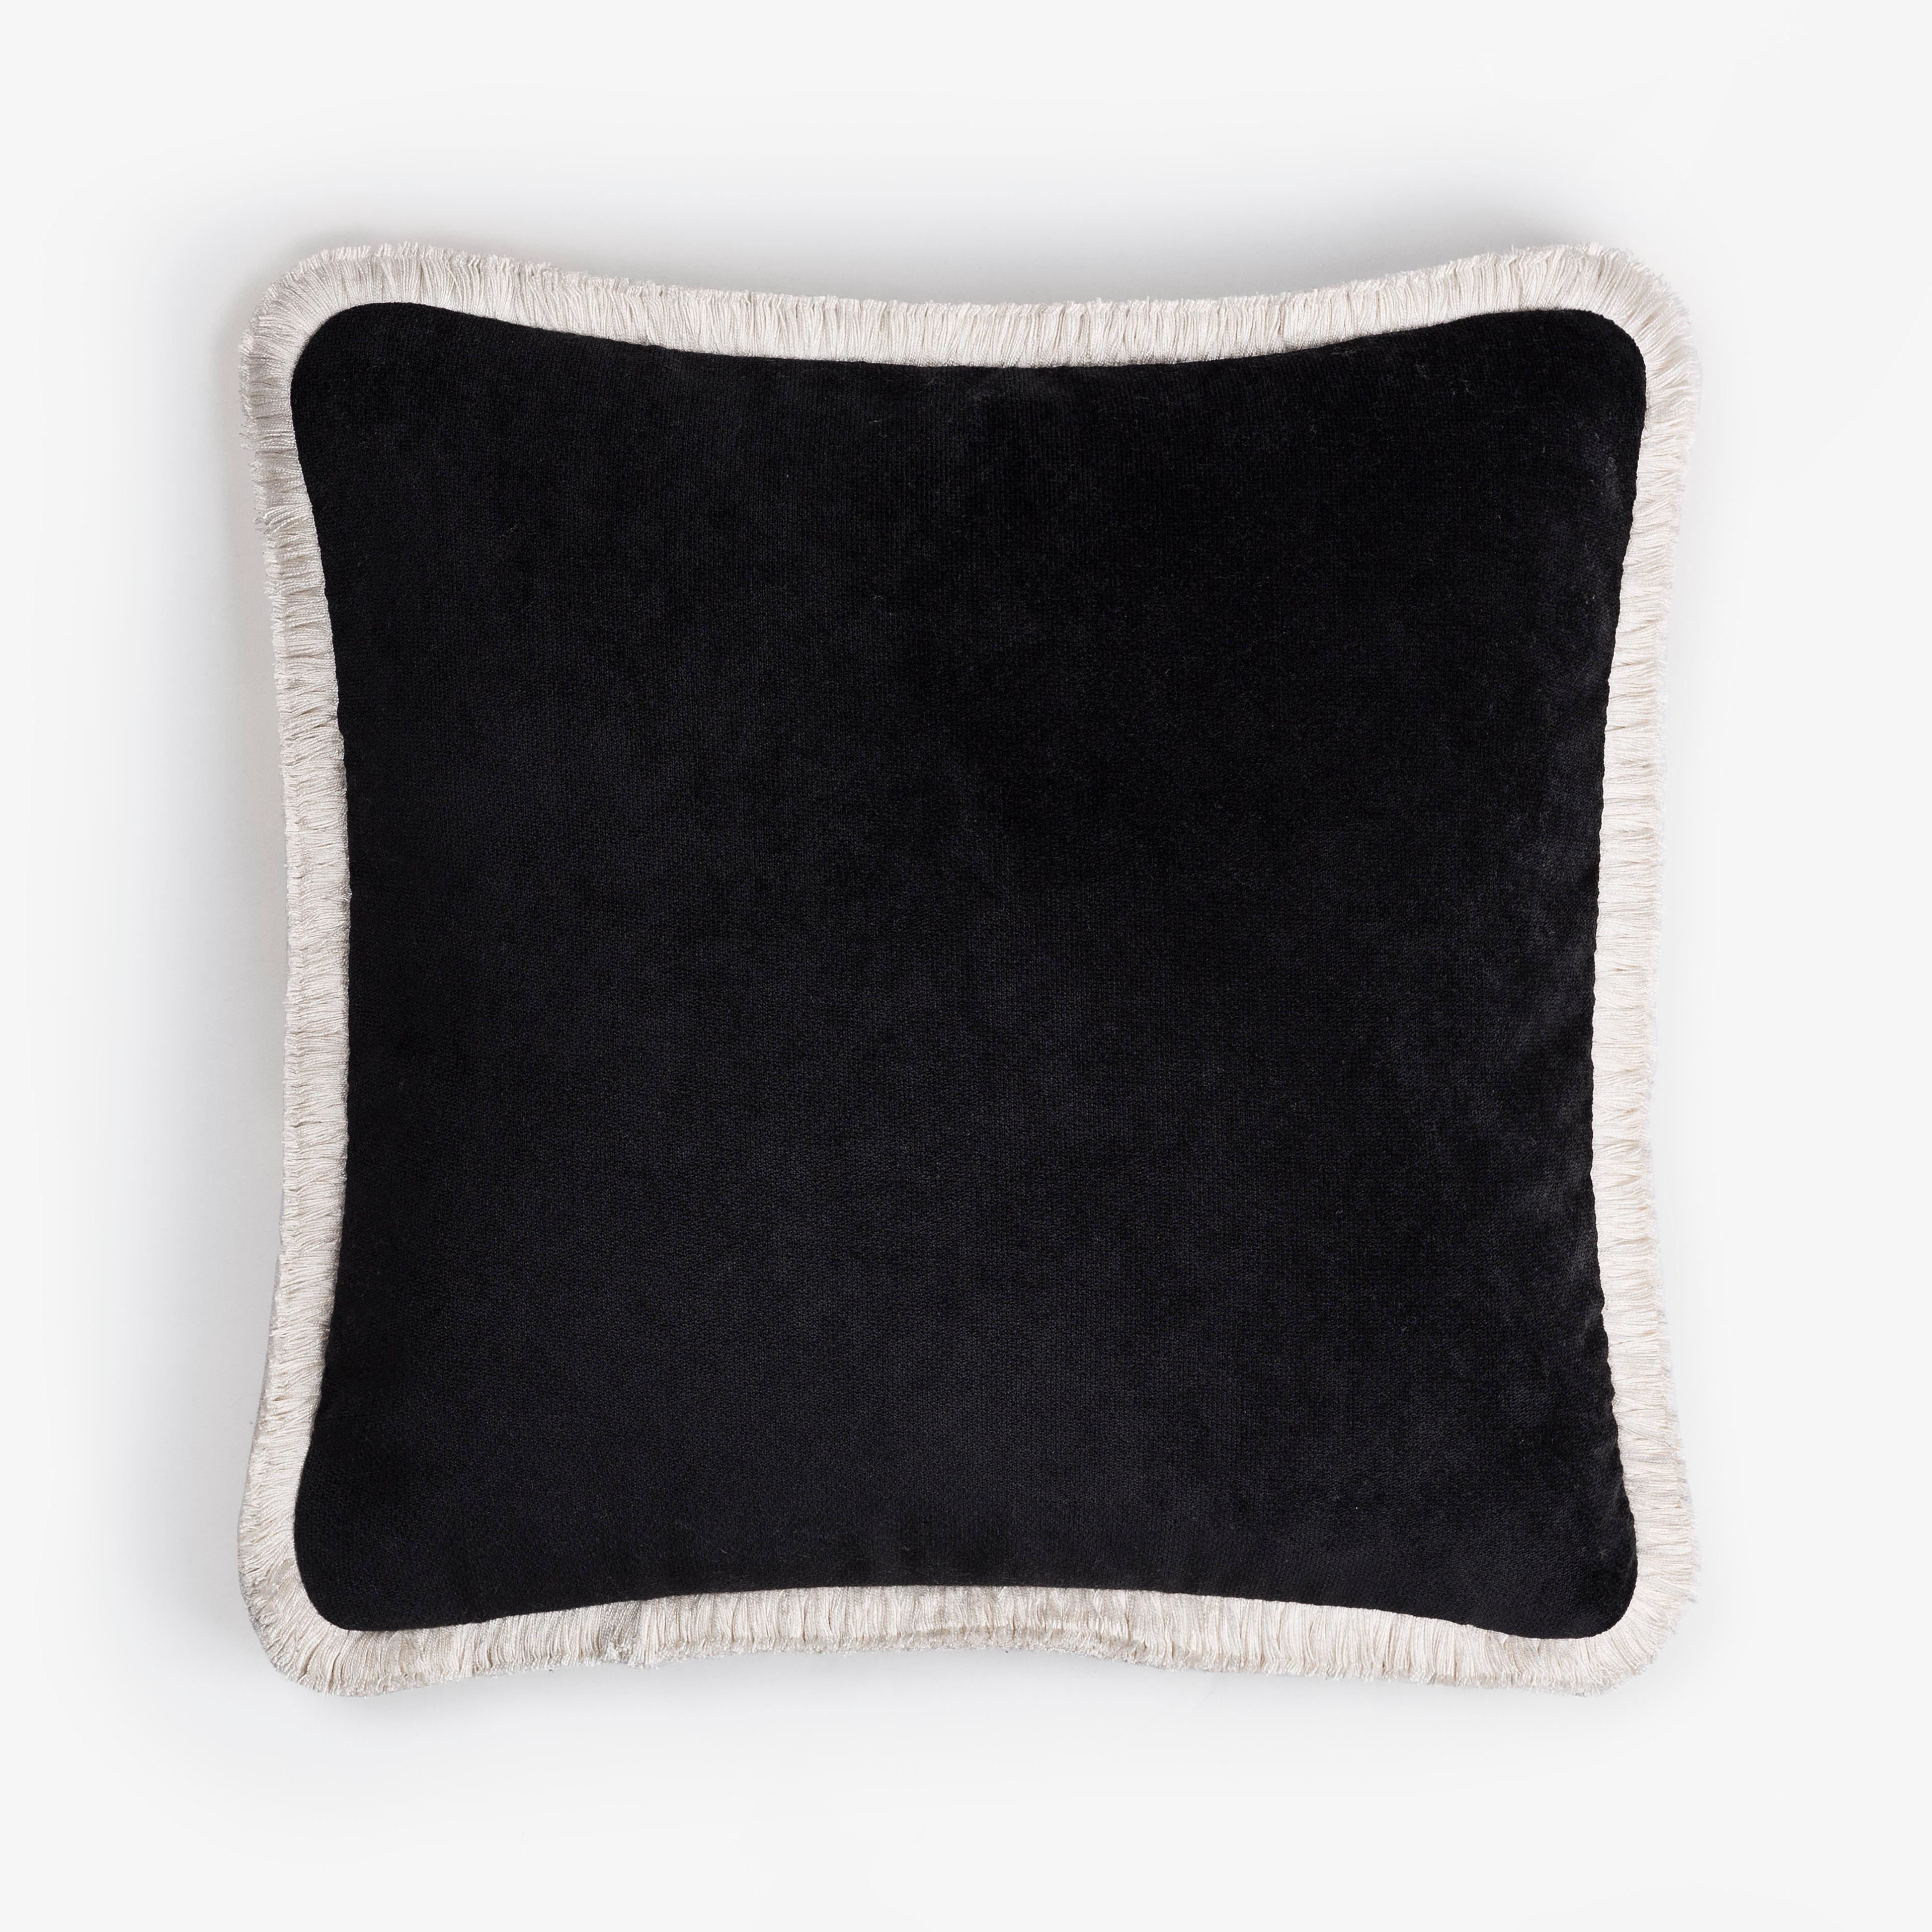 Italian Happy Pillow Black Velvet with Black Fringes For Sale